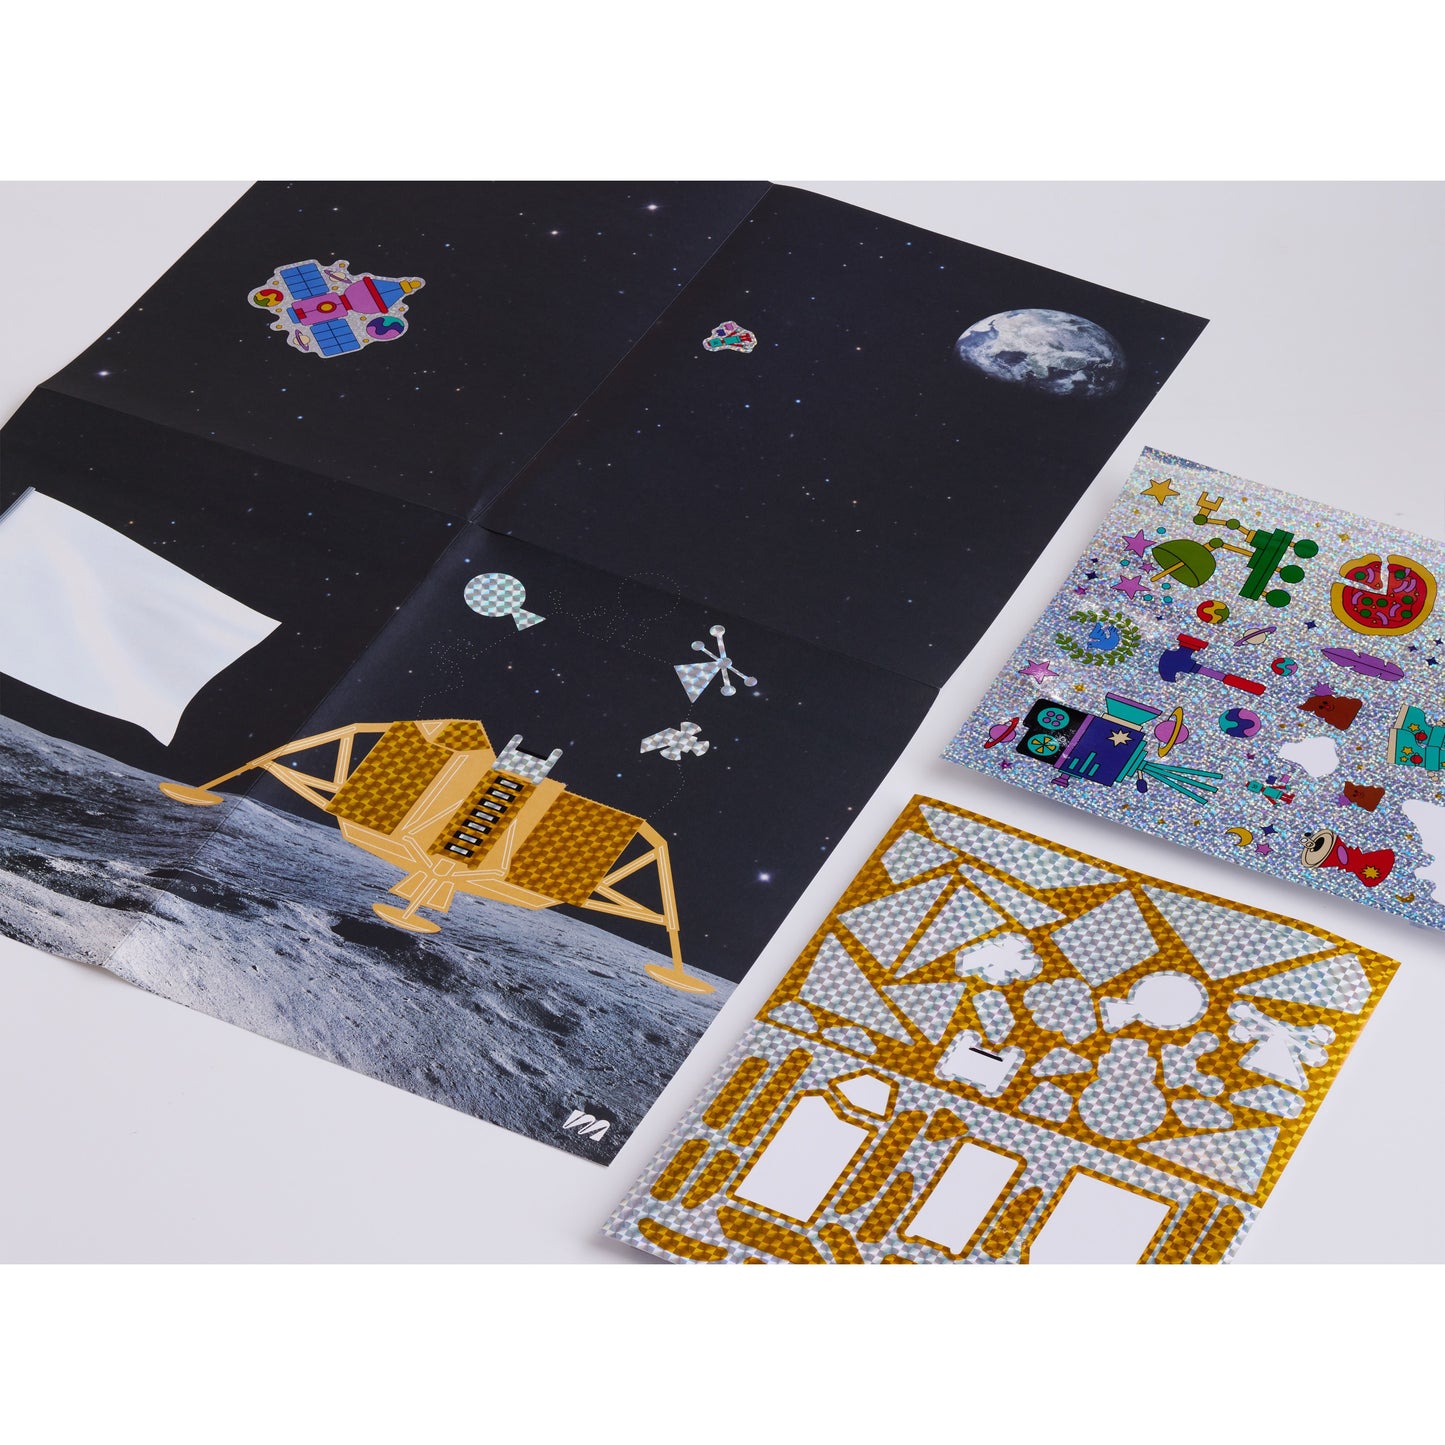 Moon Sticker Based Art Pack - Volume 2